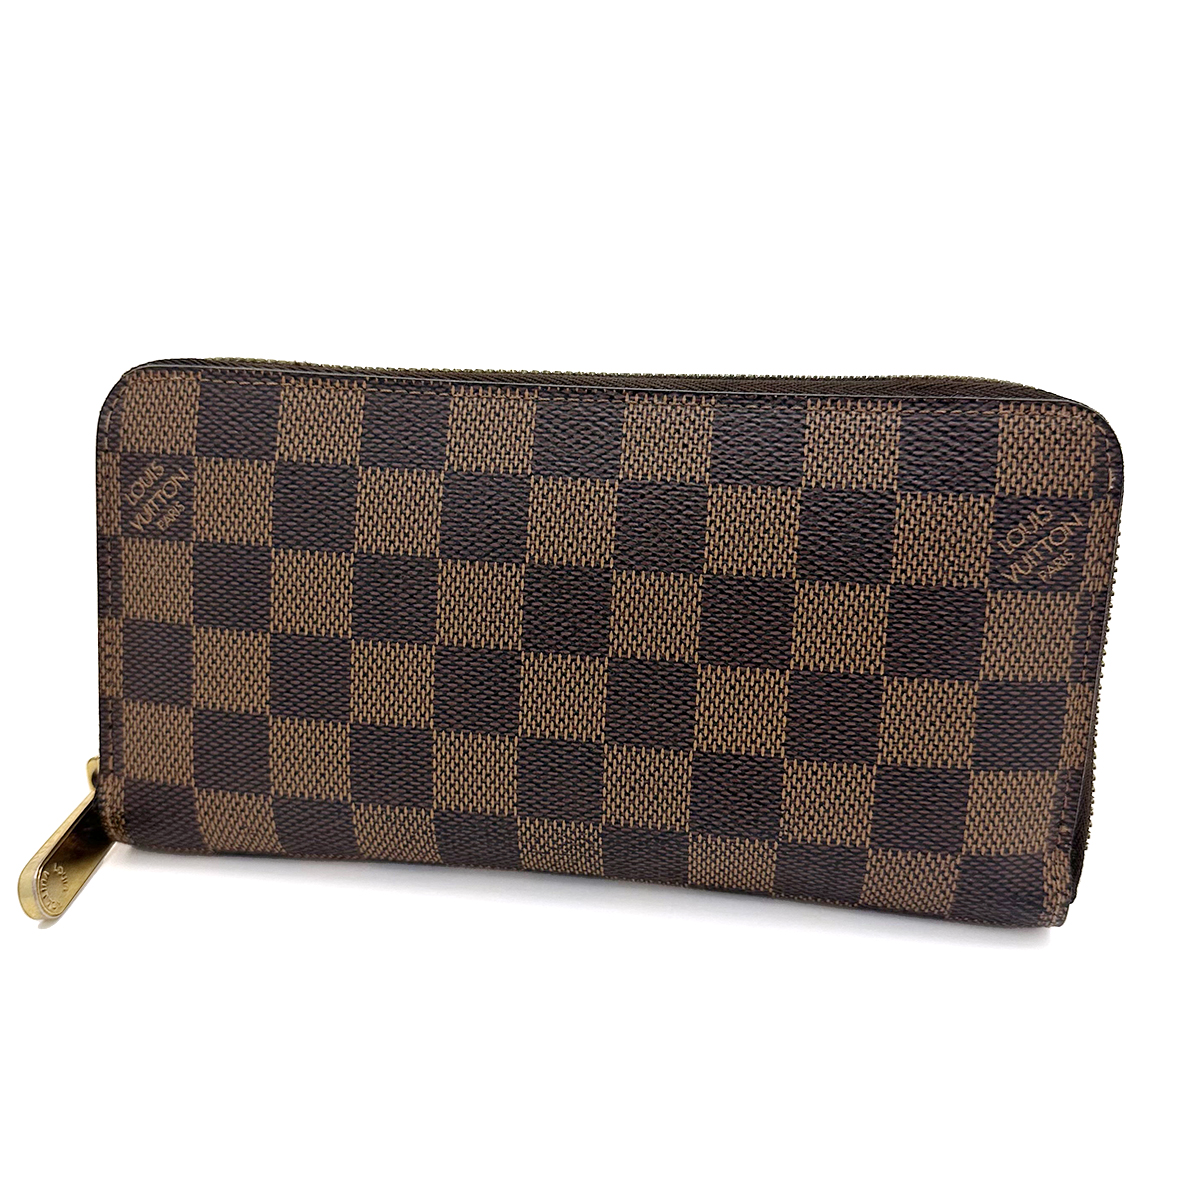 ルイヴィトン(Louis Vuitton) ジッピー・ウォレット N60015 旧型 長財布 ダミエ ブラウン